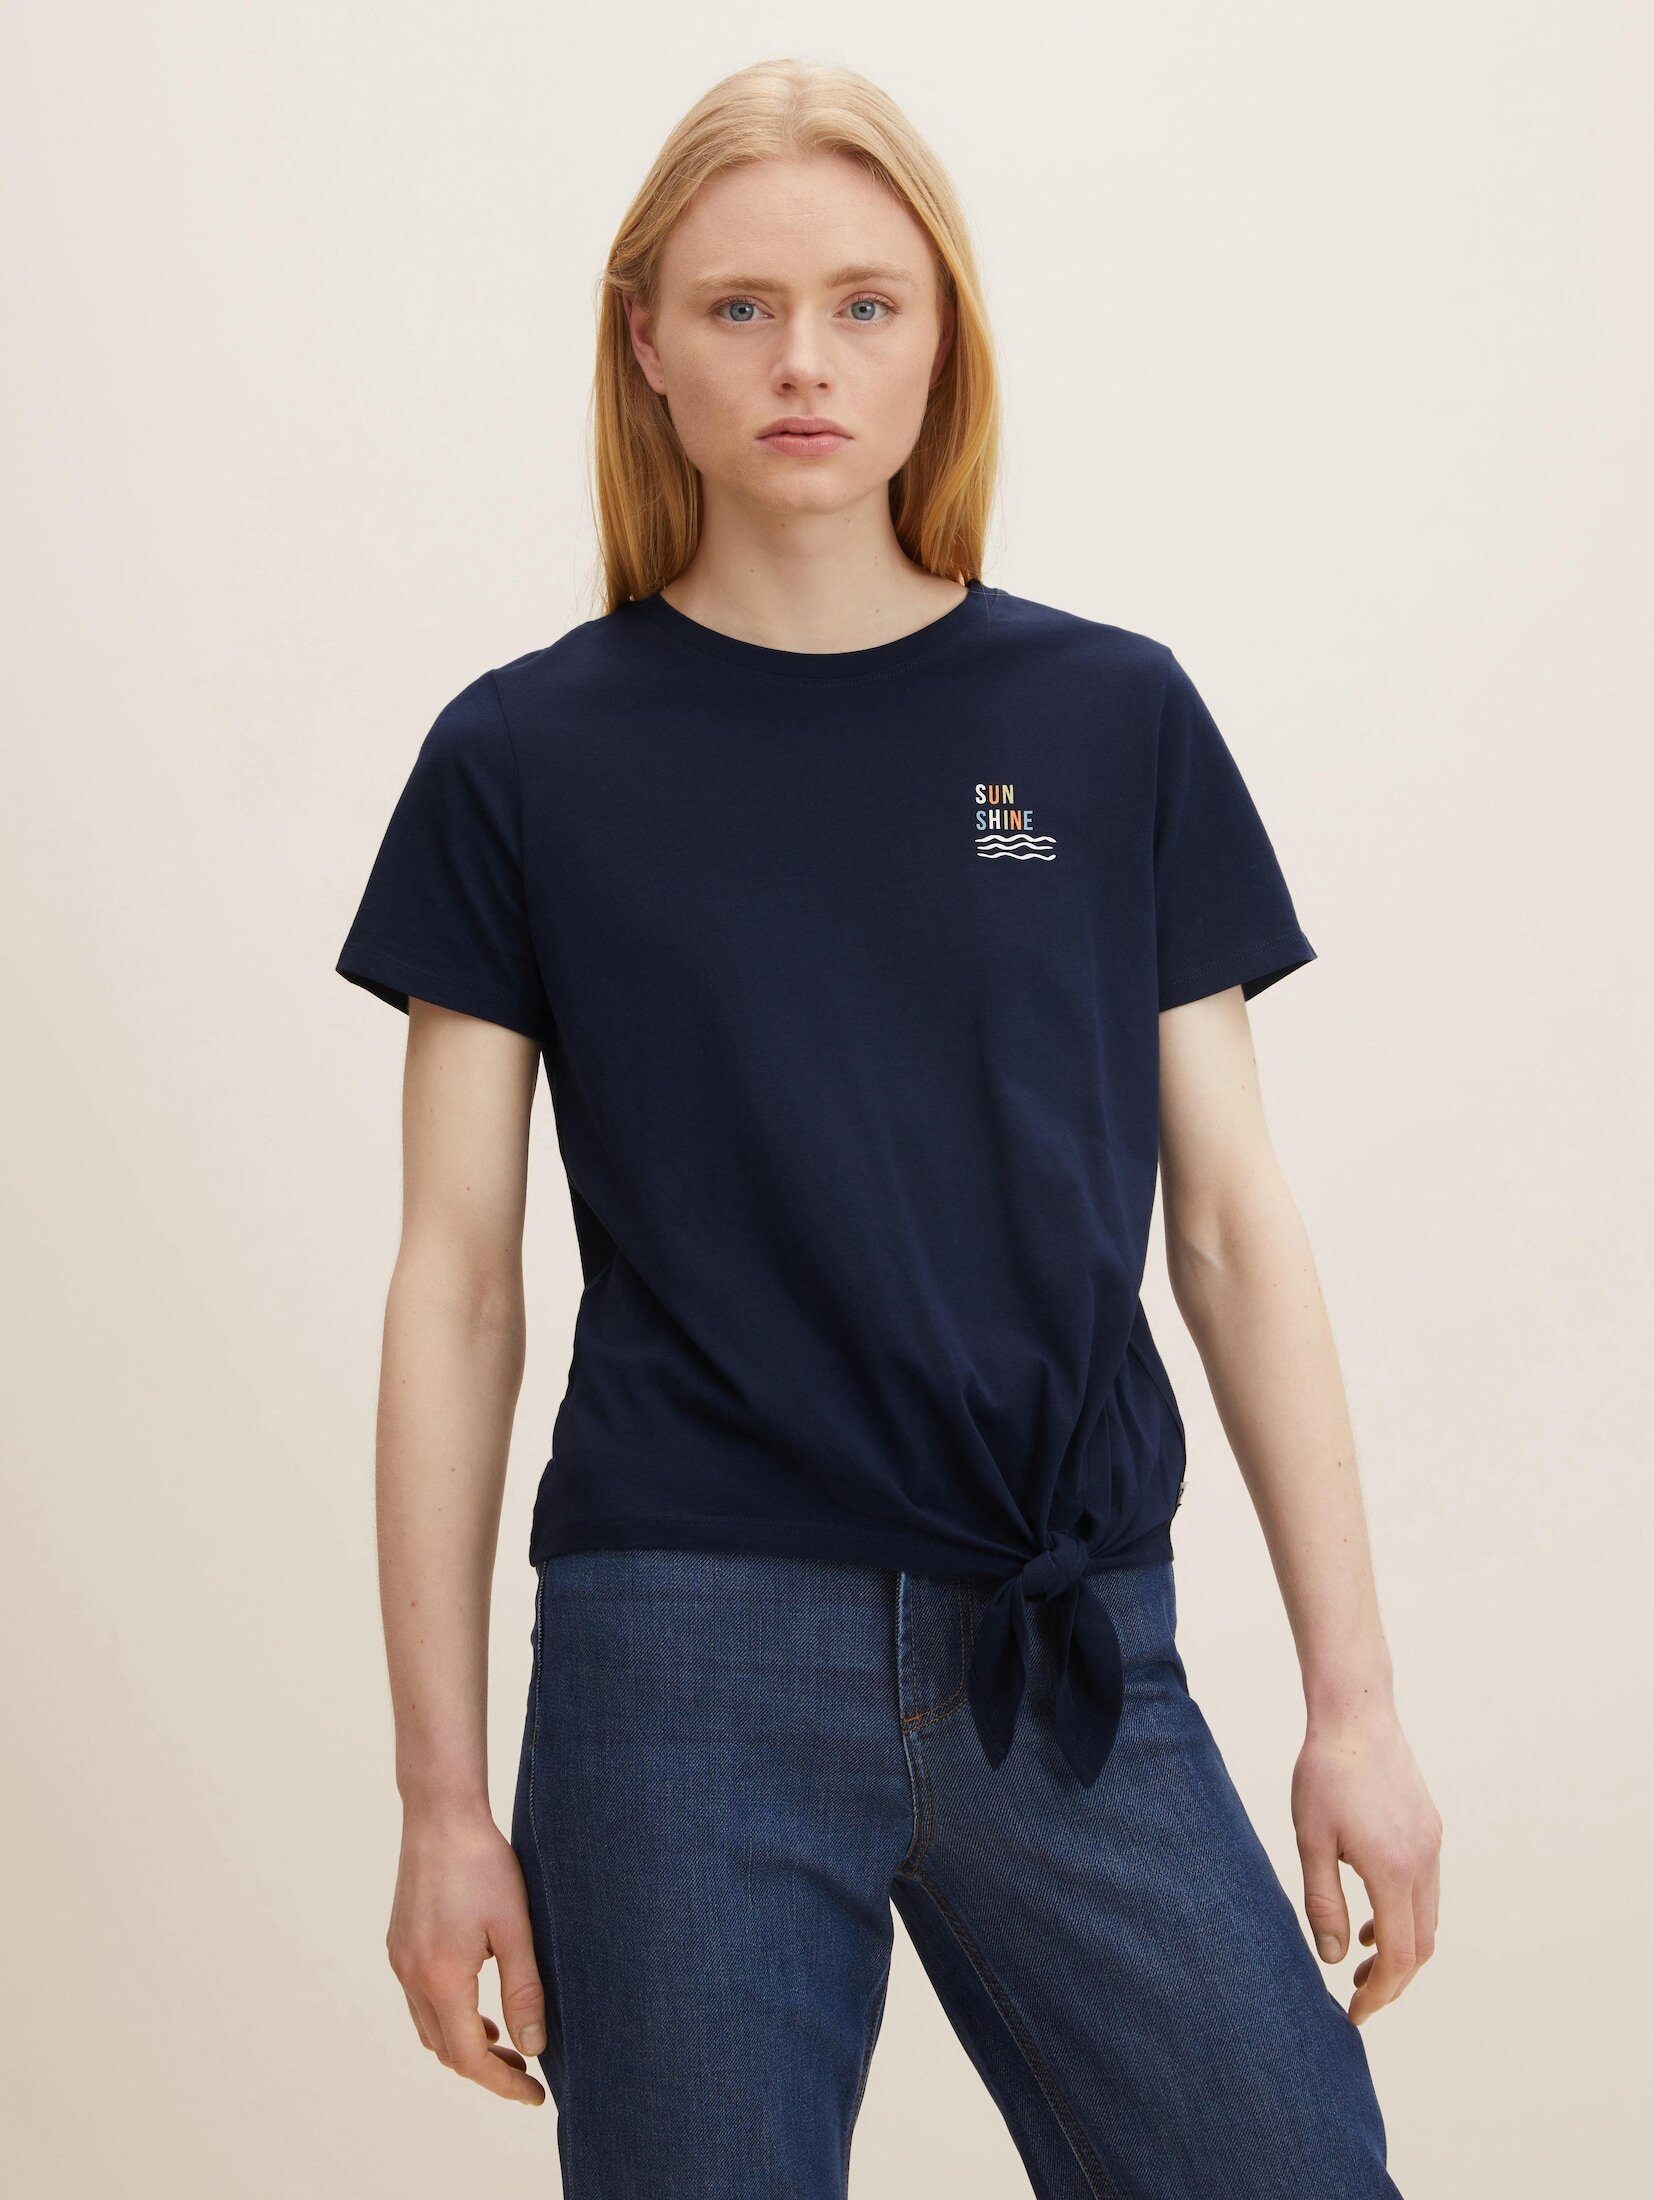 TOM TAILOR für Mädchen T-Shirts/Tops Langarmshirt mit Schrift-Print